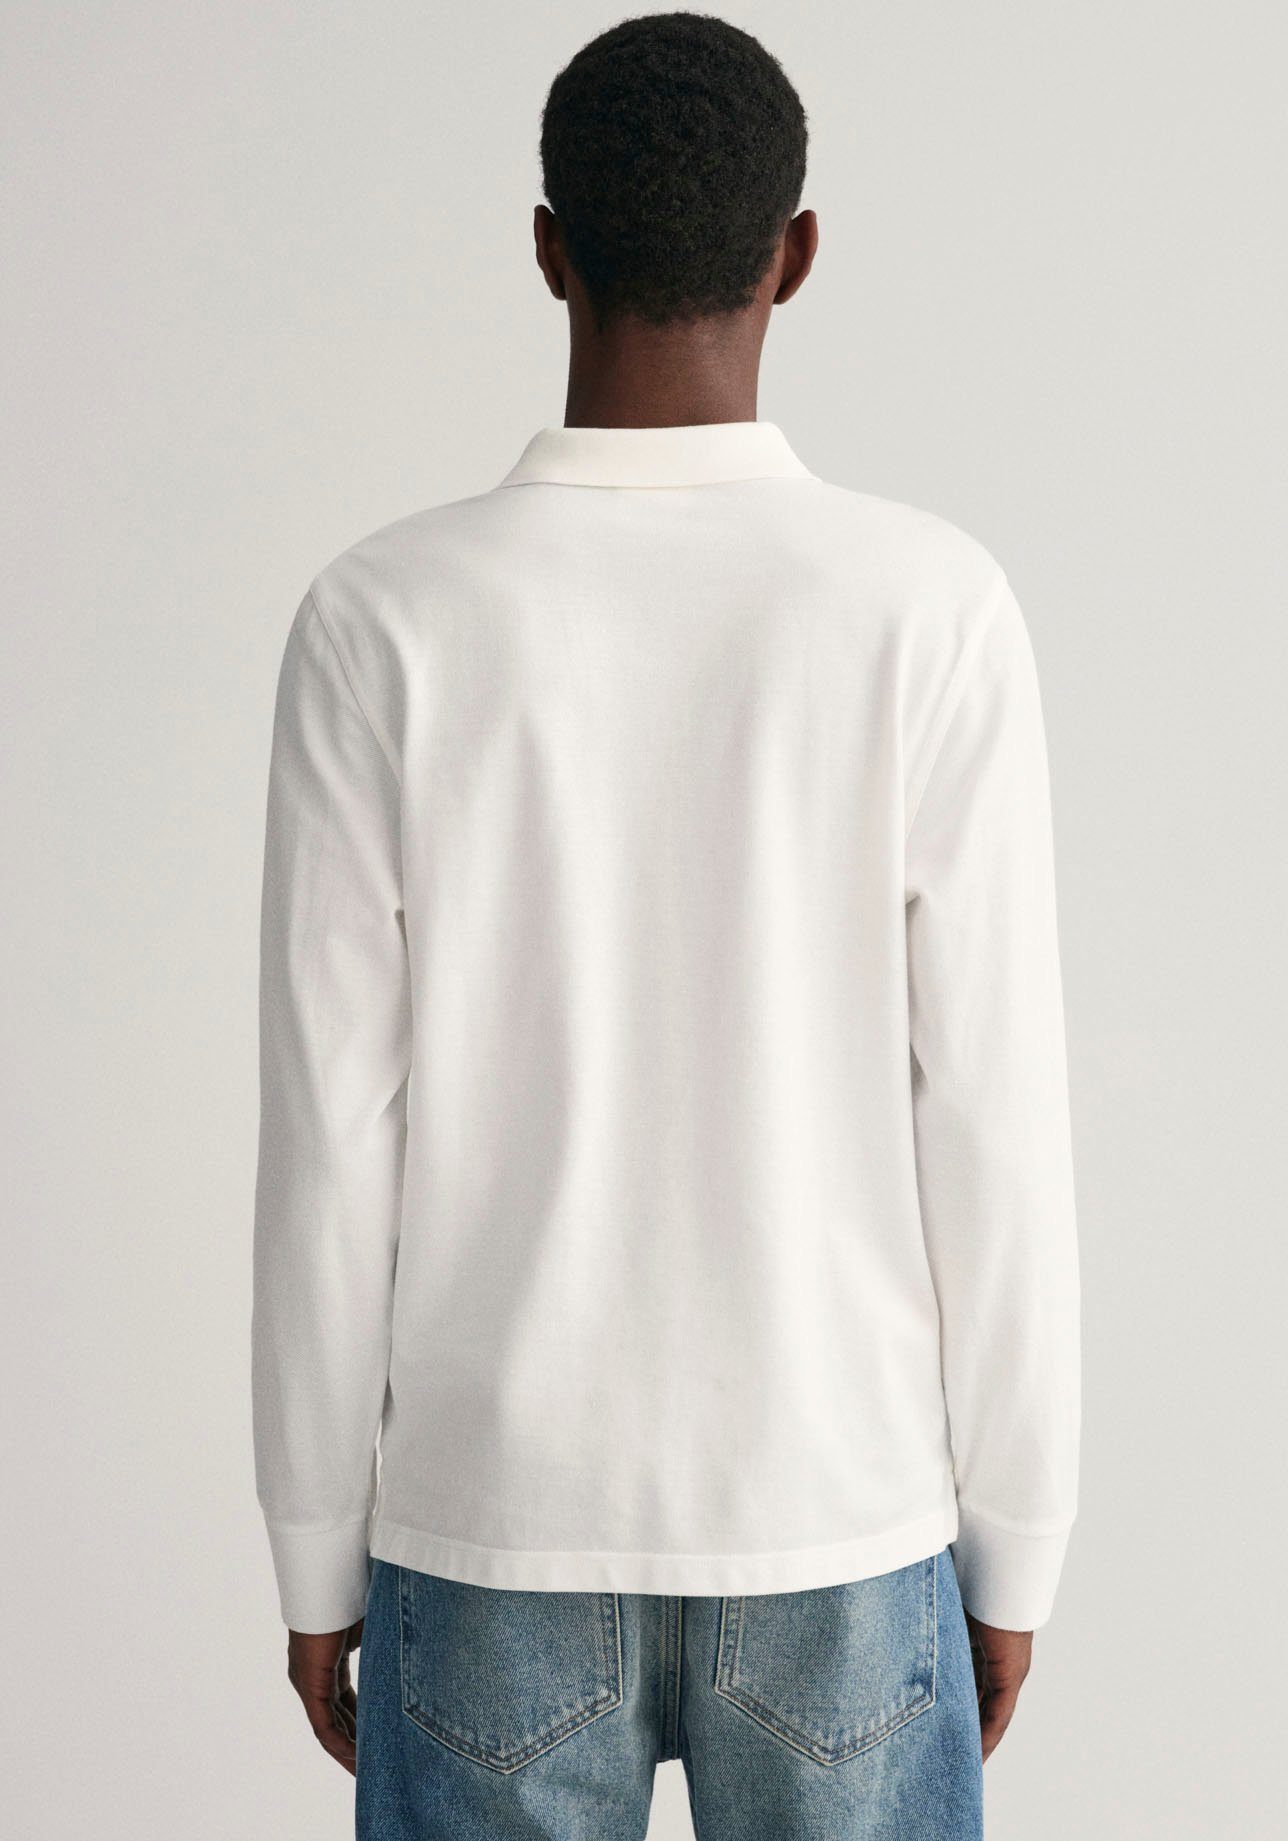 REG Brust Gant Logotickerei Poloshirt mit RUGGER white SHIELD PIQUE LS auf der